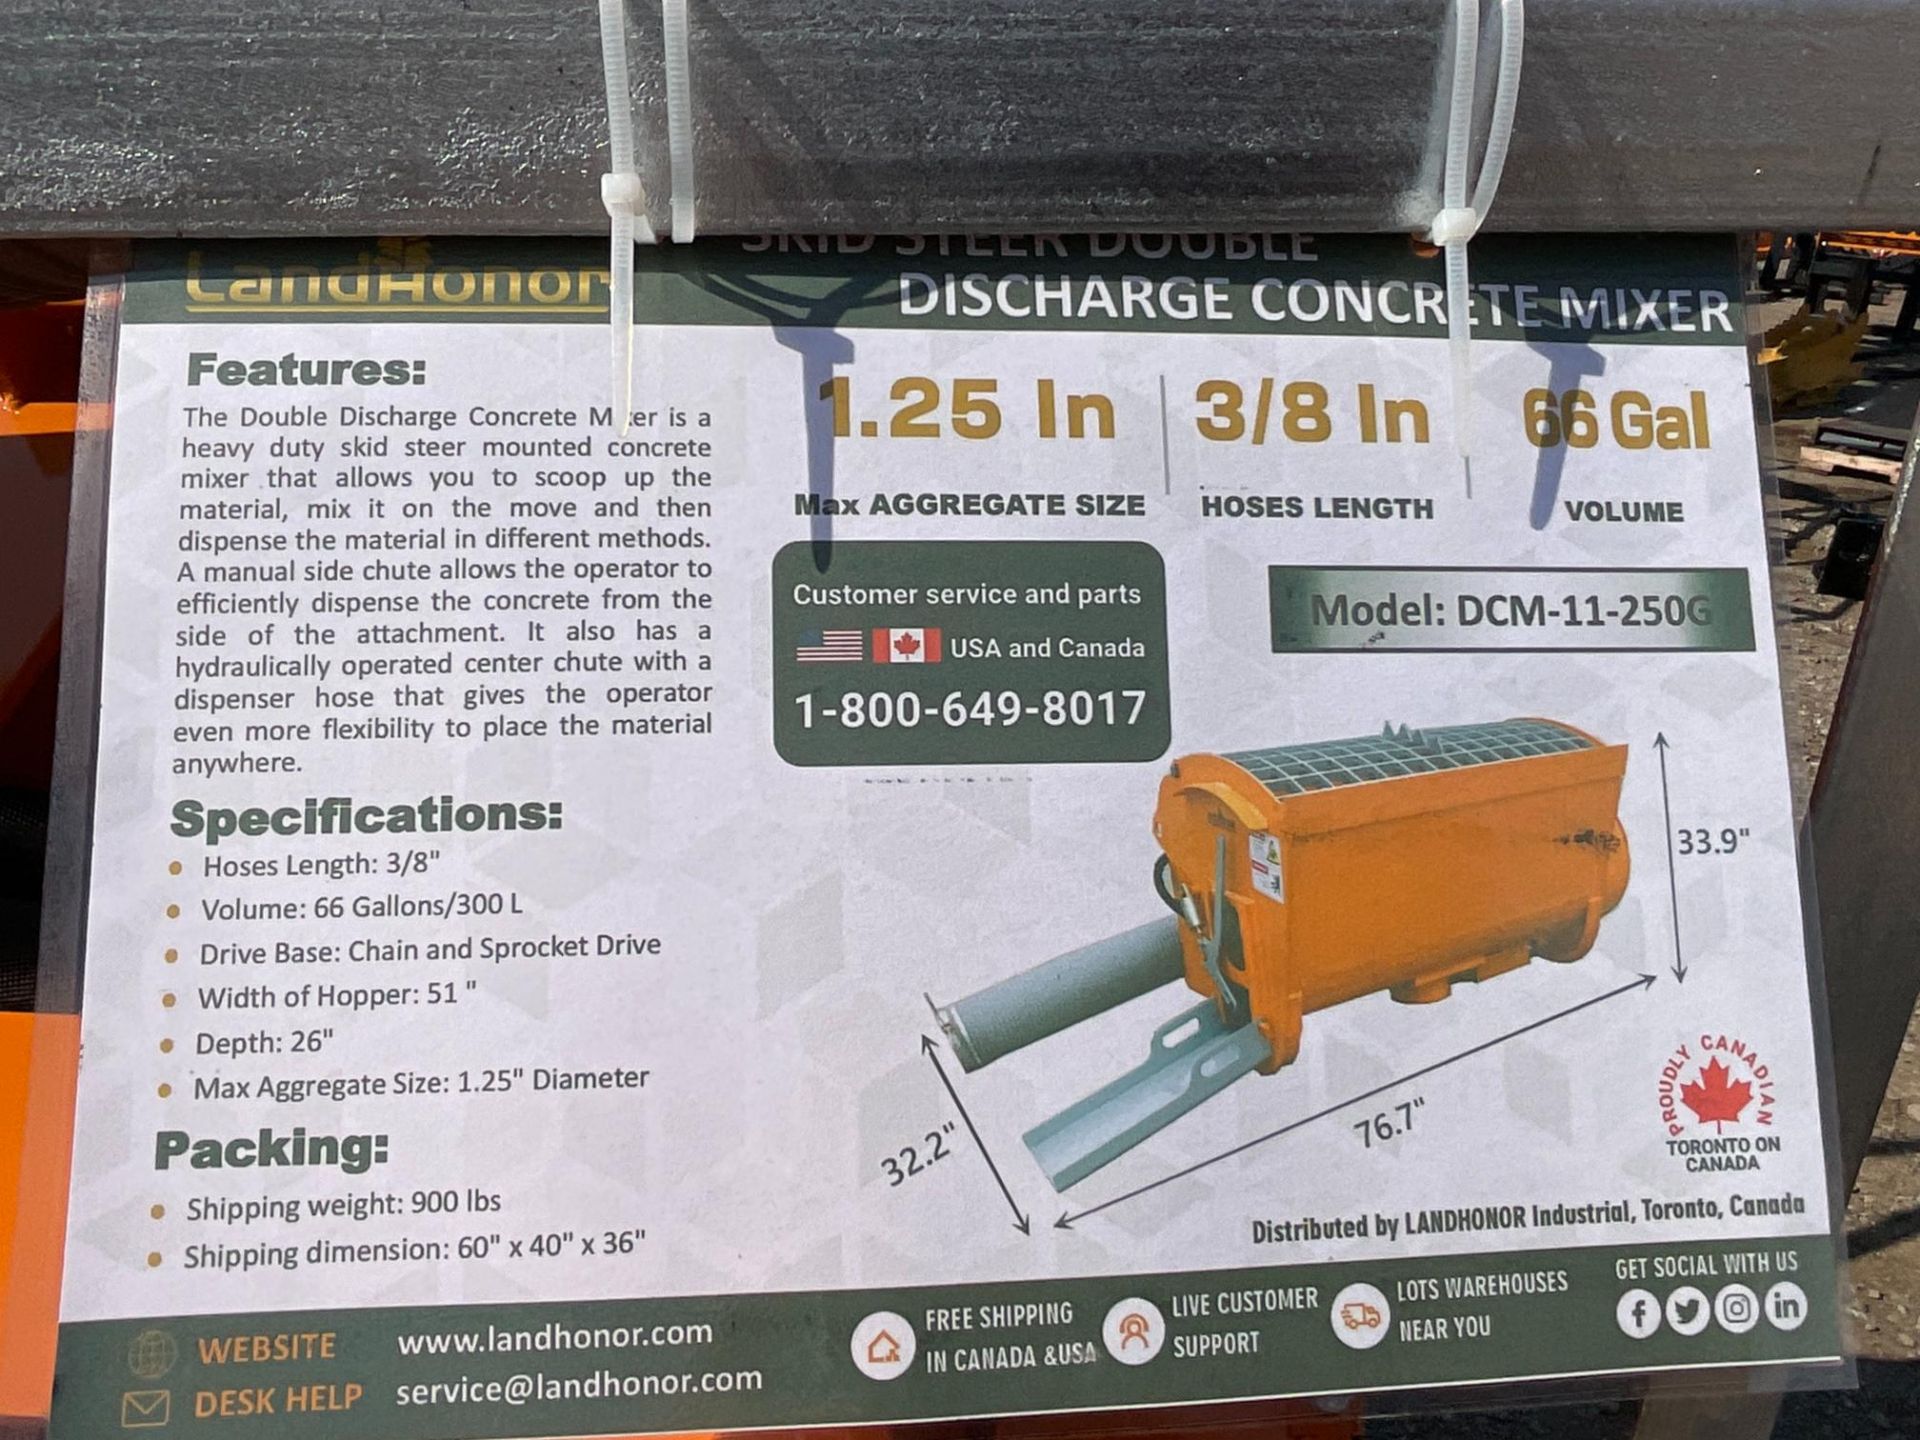 Landhonor DCM-11-250G Discharge Concrete Mixer - Image 3 of 3